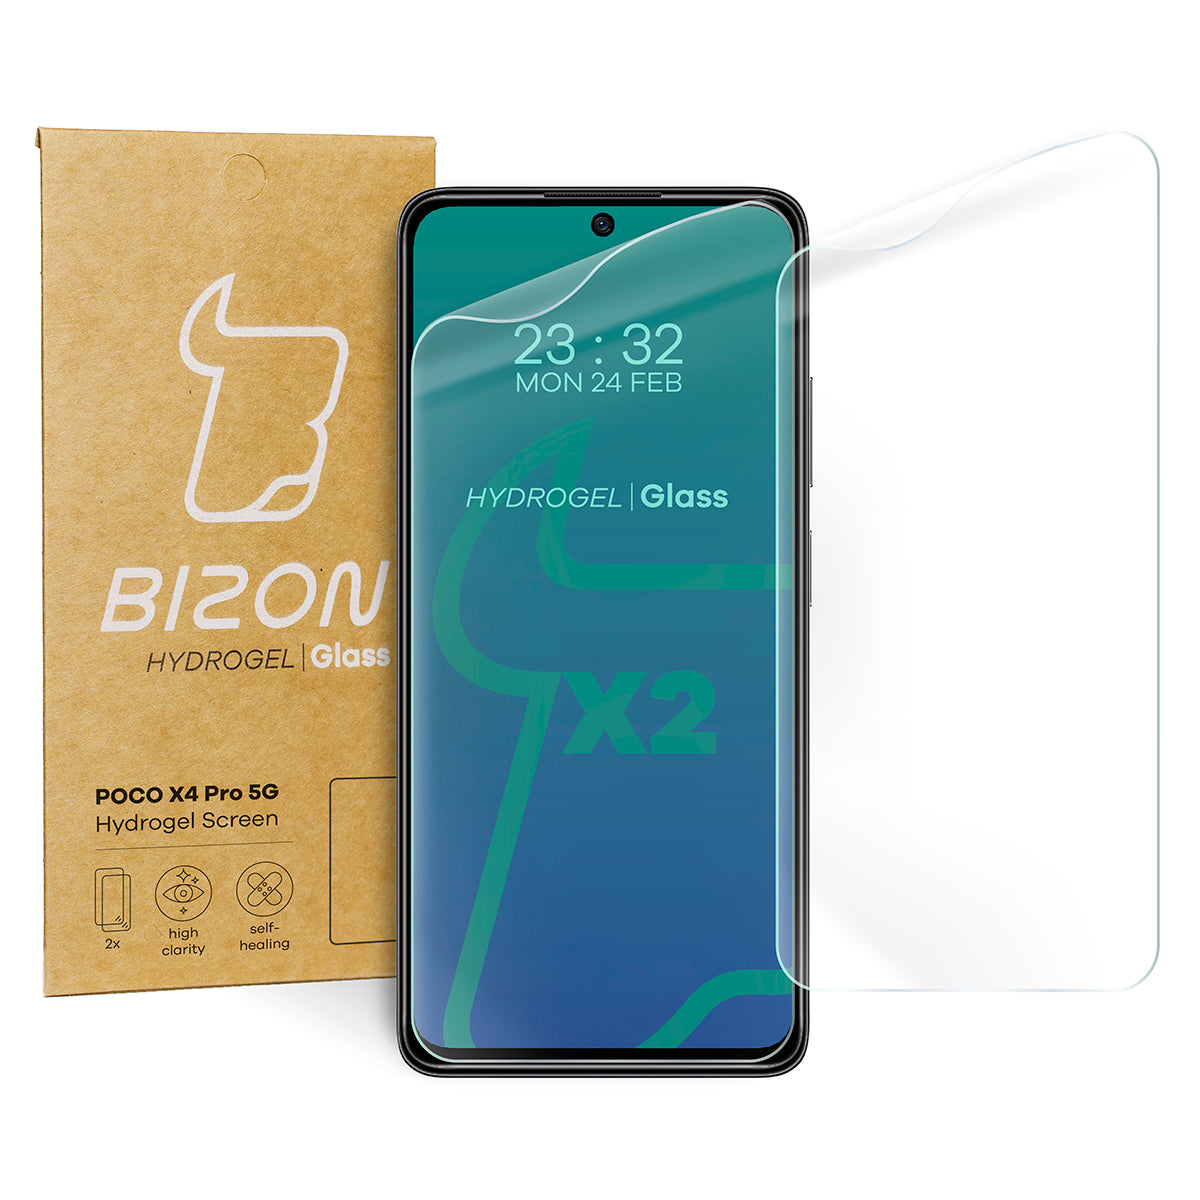 Hydrogel Folie für den Bildschirm Bizon Glass Hydrogel, Poco X4 Pro 5G, 2 Stück